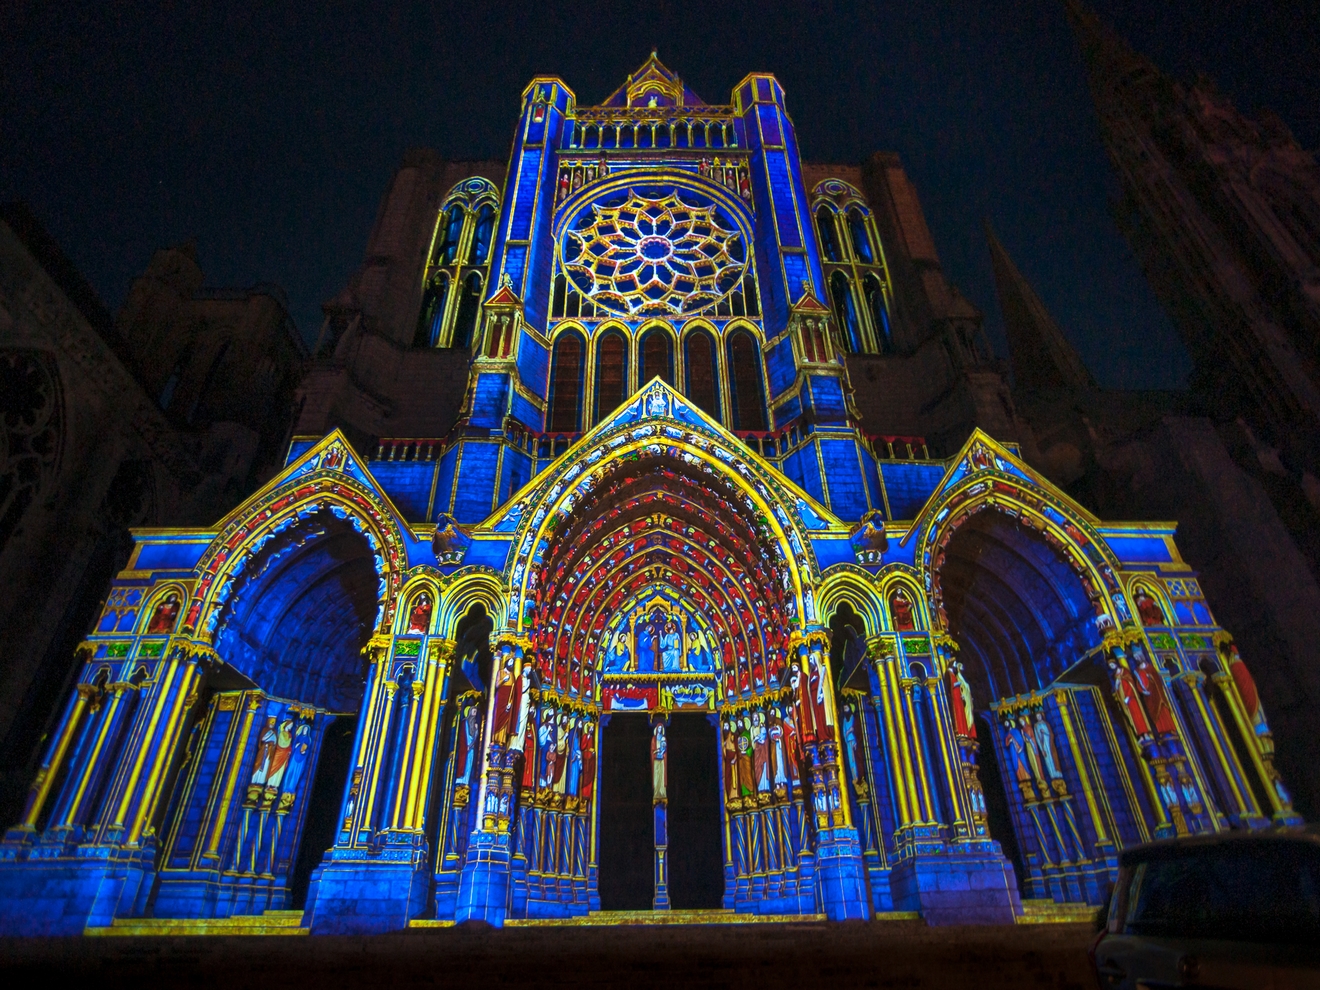 La fête de la lumière - Chartres en lumières